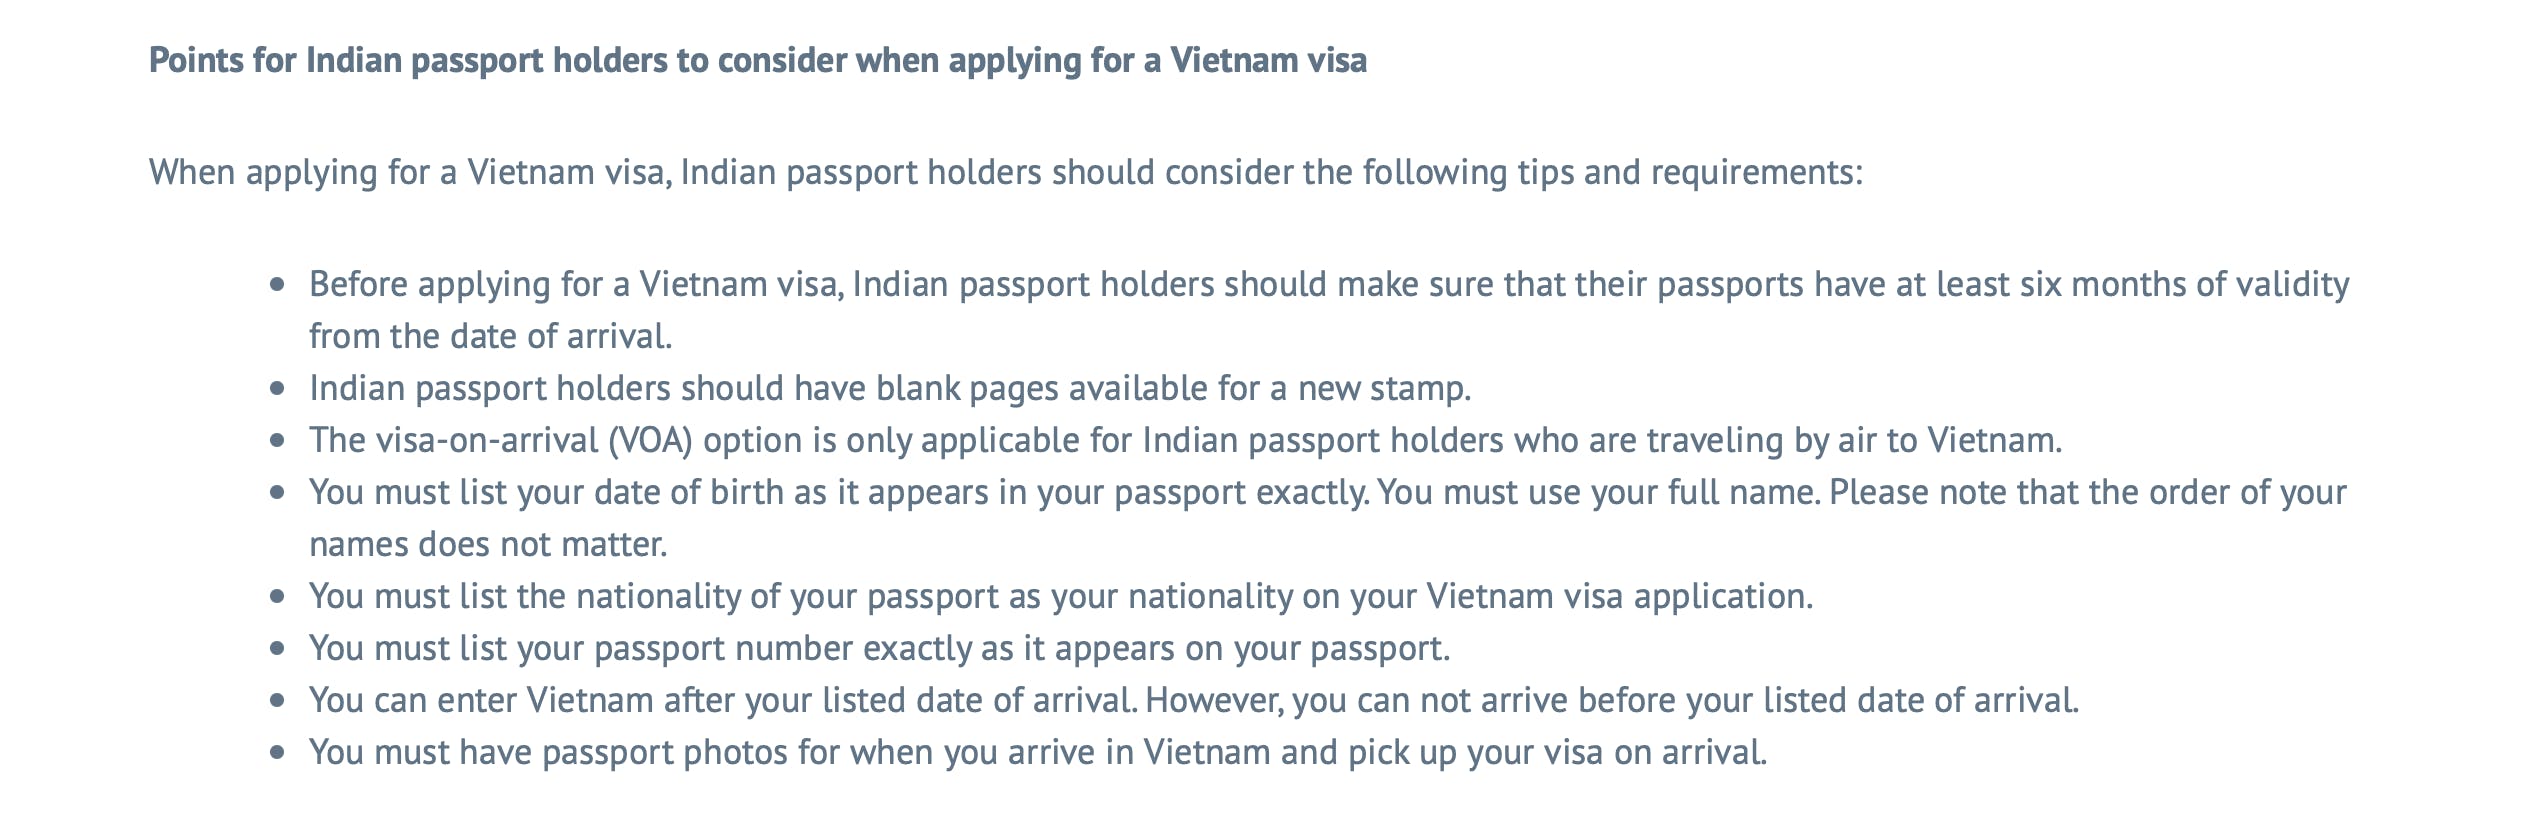 Vietnam VOA details for Indian citizens